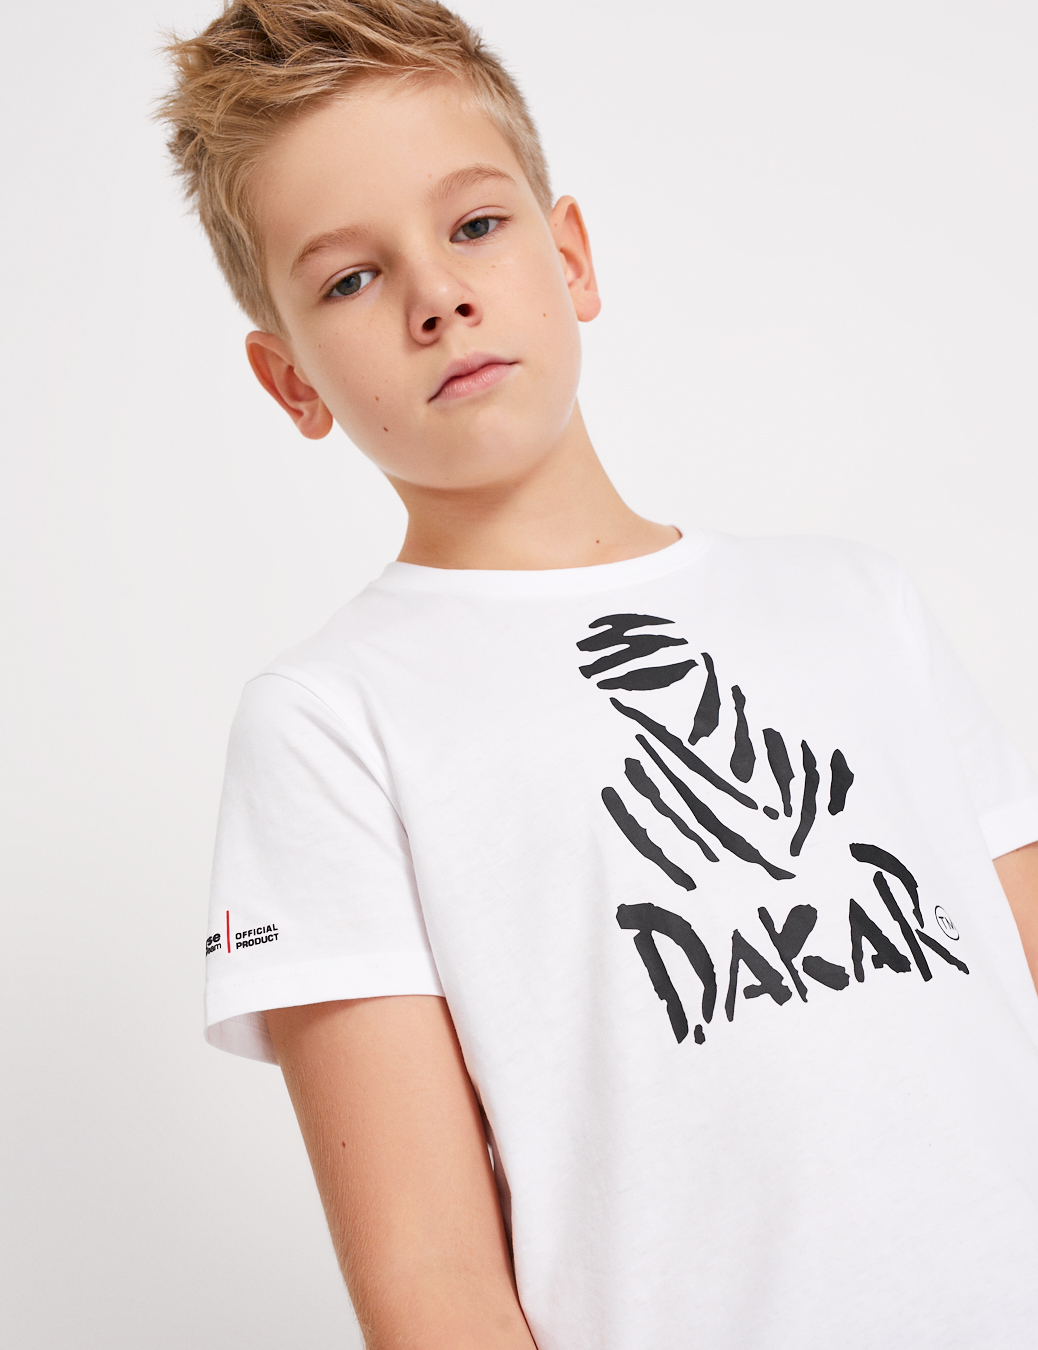 T-Shirt Dakar Logo - Kinder